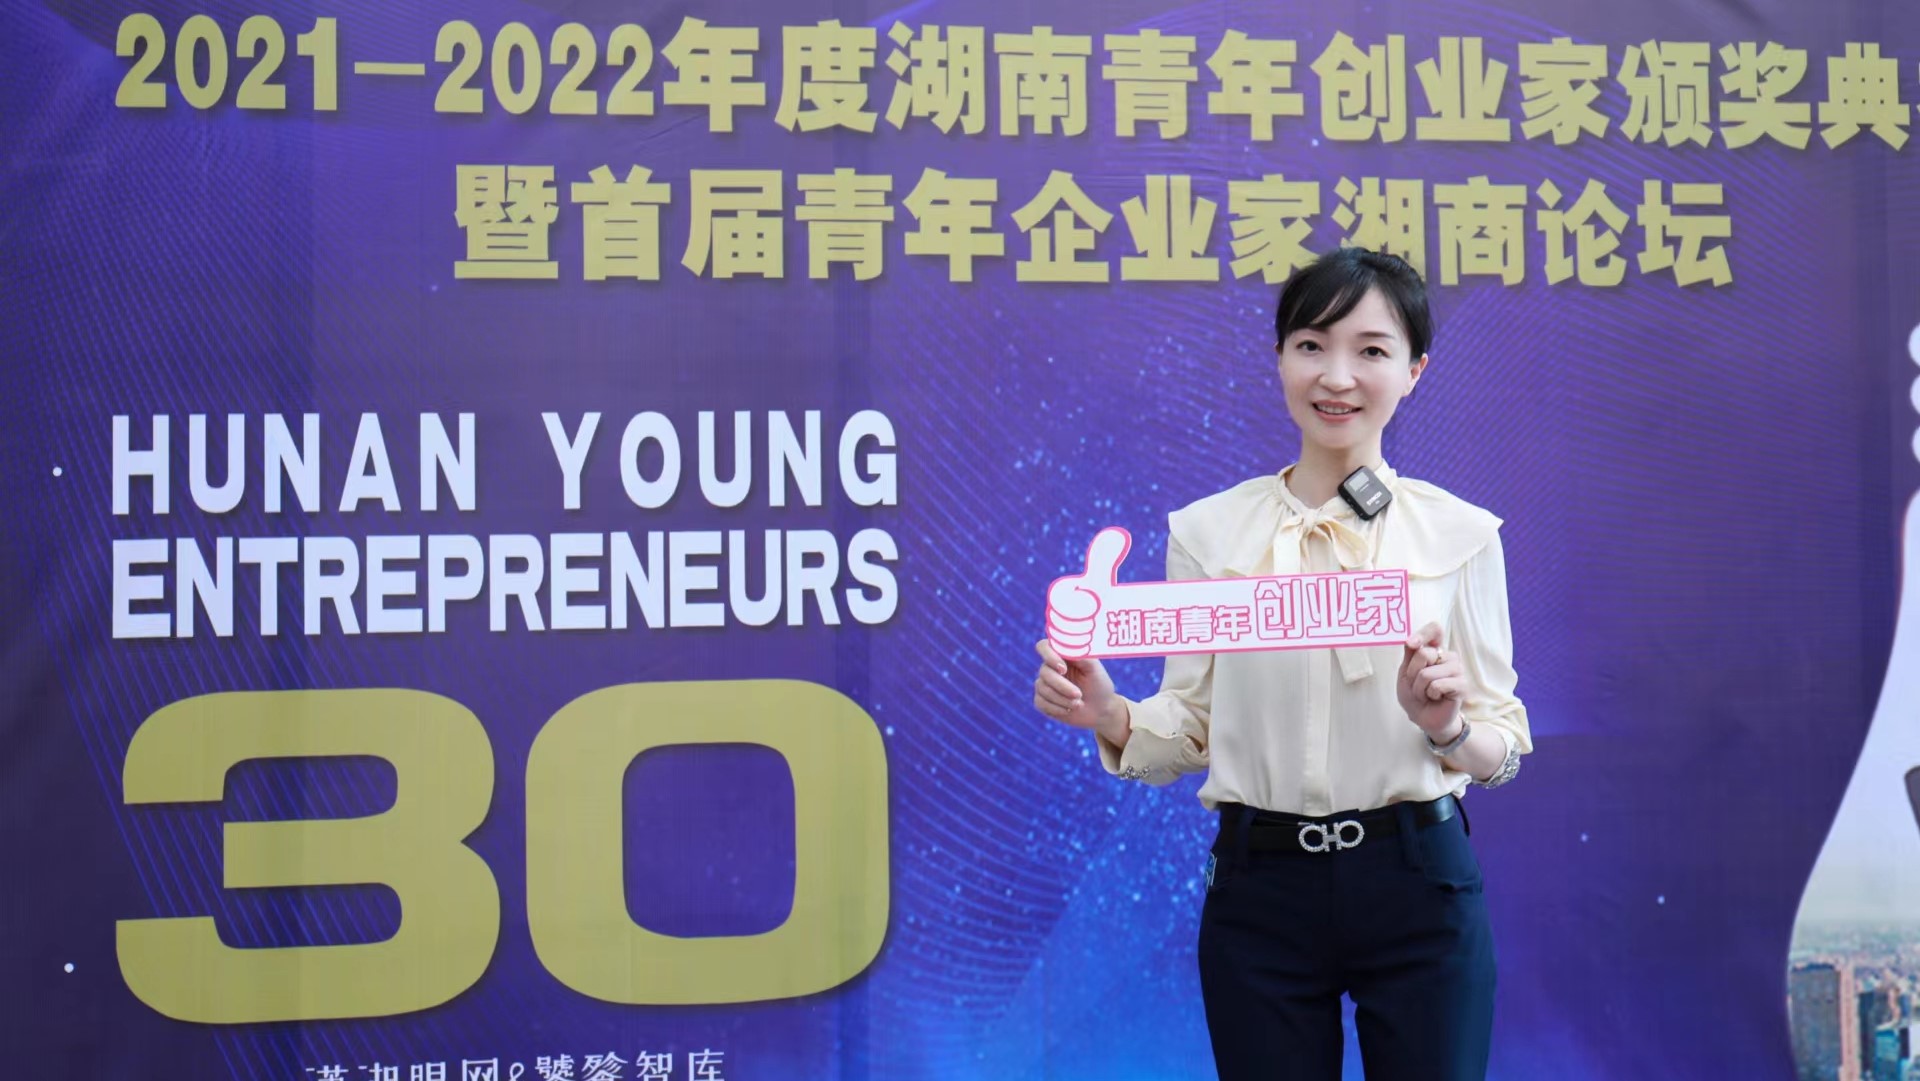 星火智慧咨询陈静被授予“2021-2022年度湖南青年创业家”奖